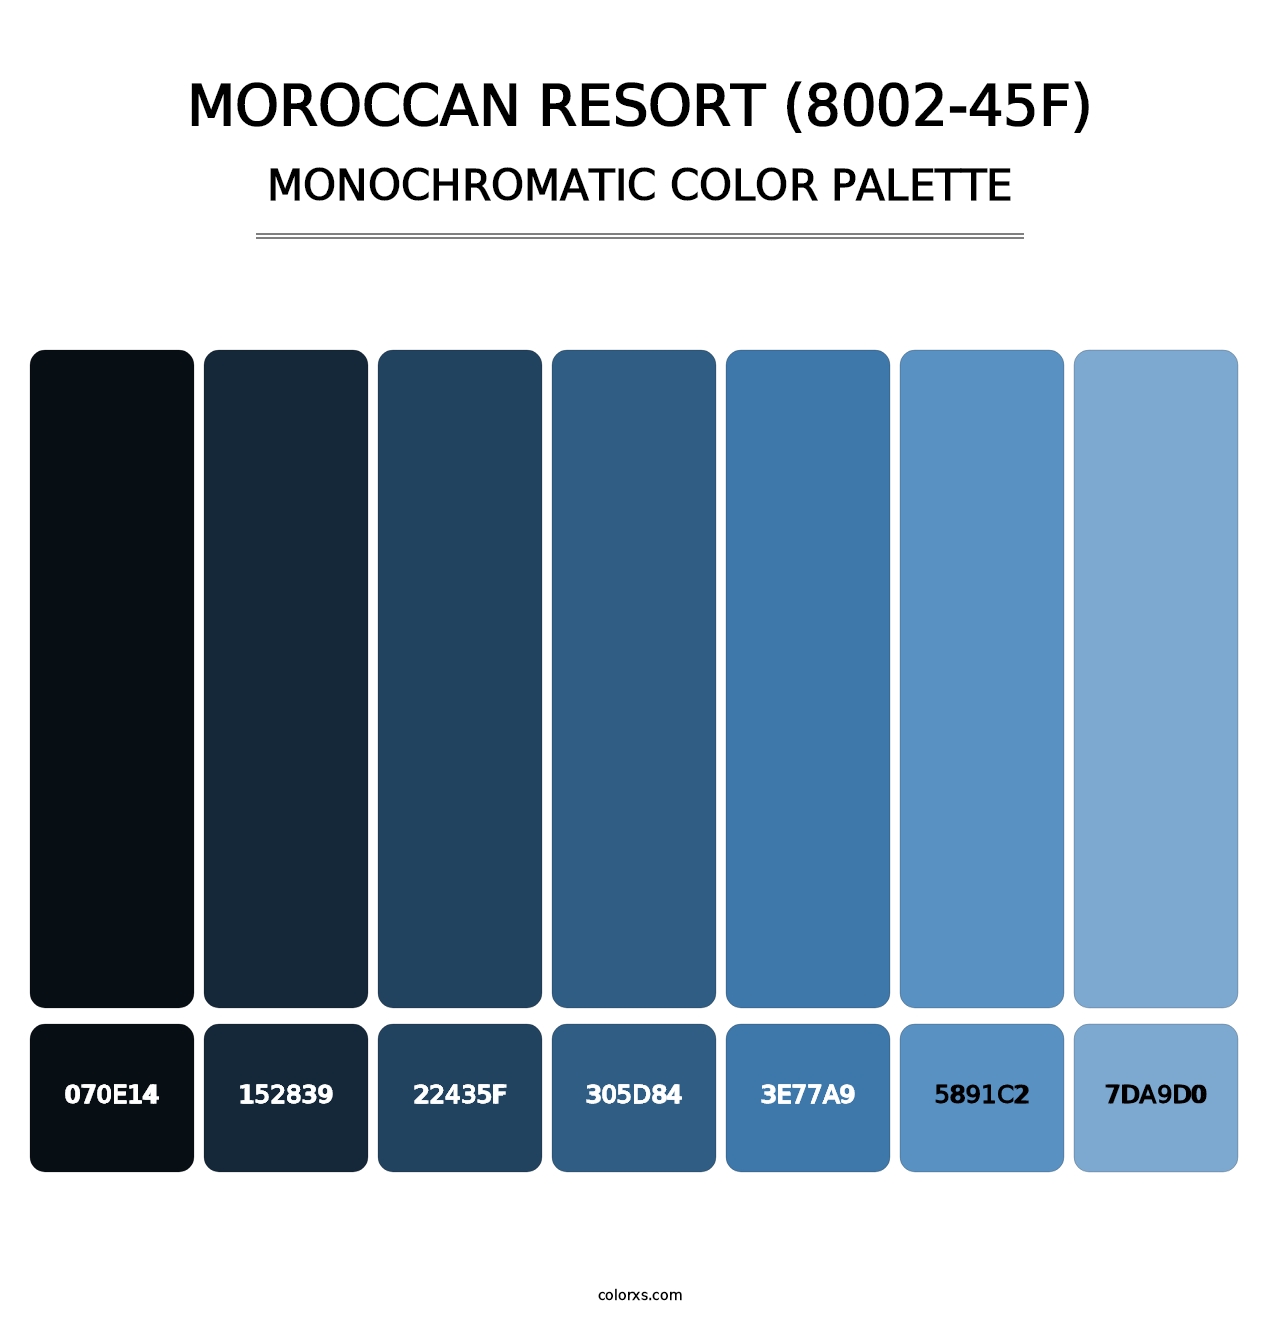 Moroccan Resort (8002-45F) - Monochromatic Color Palette